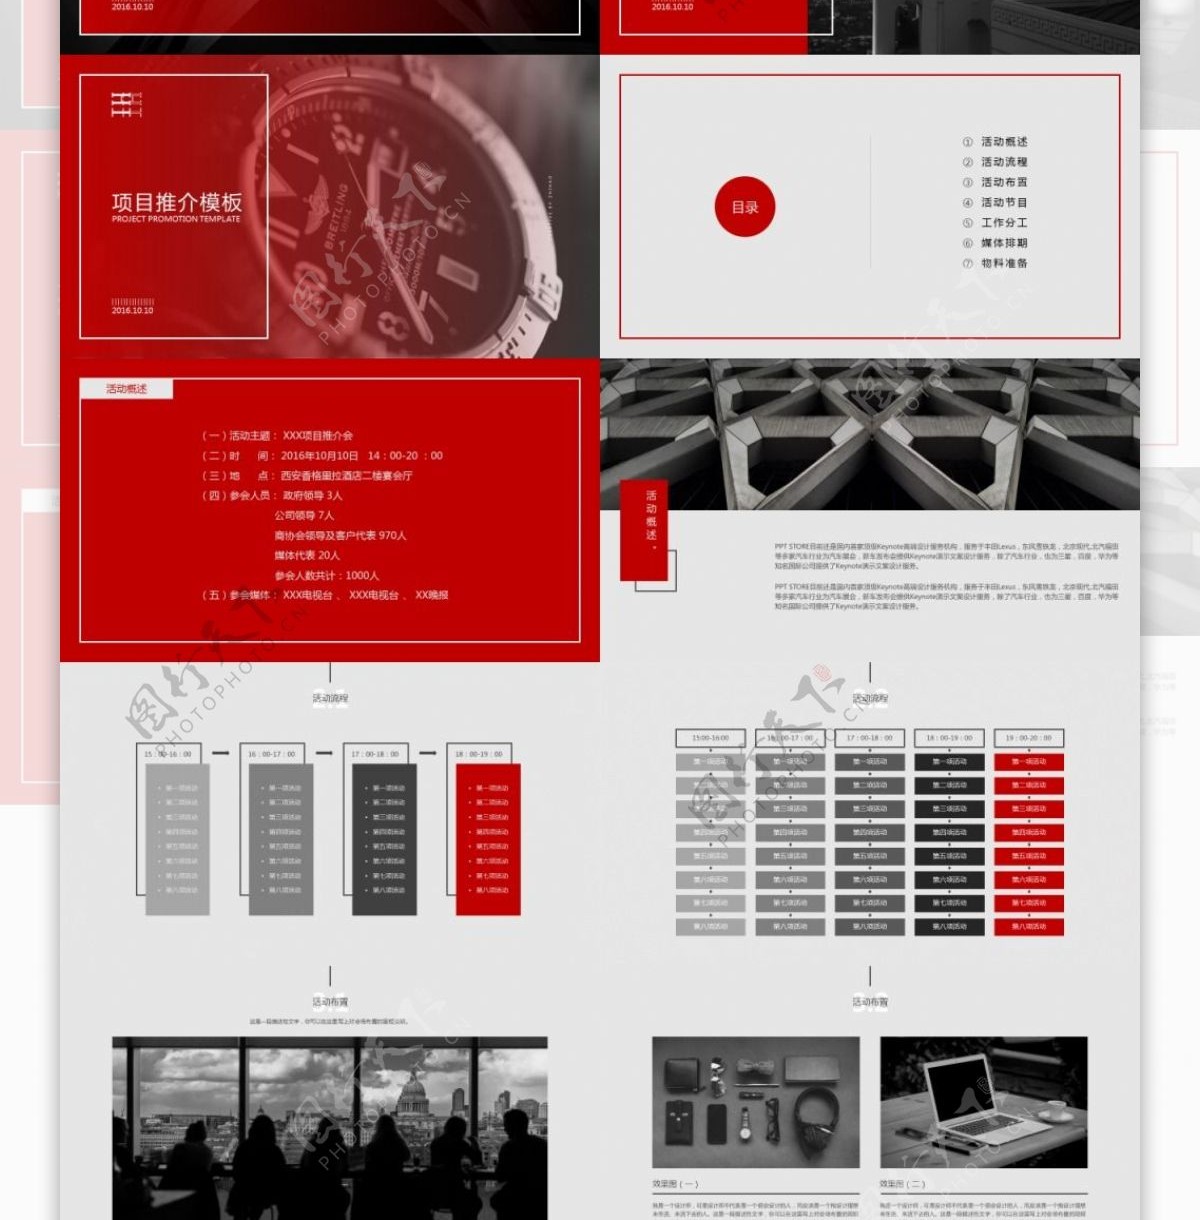 酷黑红配色时尚杂志风完整框架项目推介会介绍宣传ppt模板